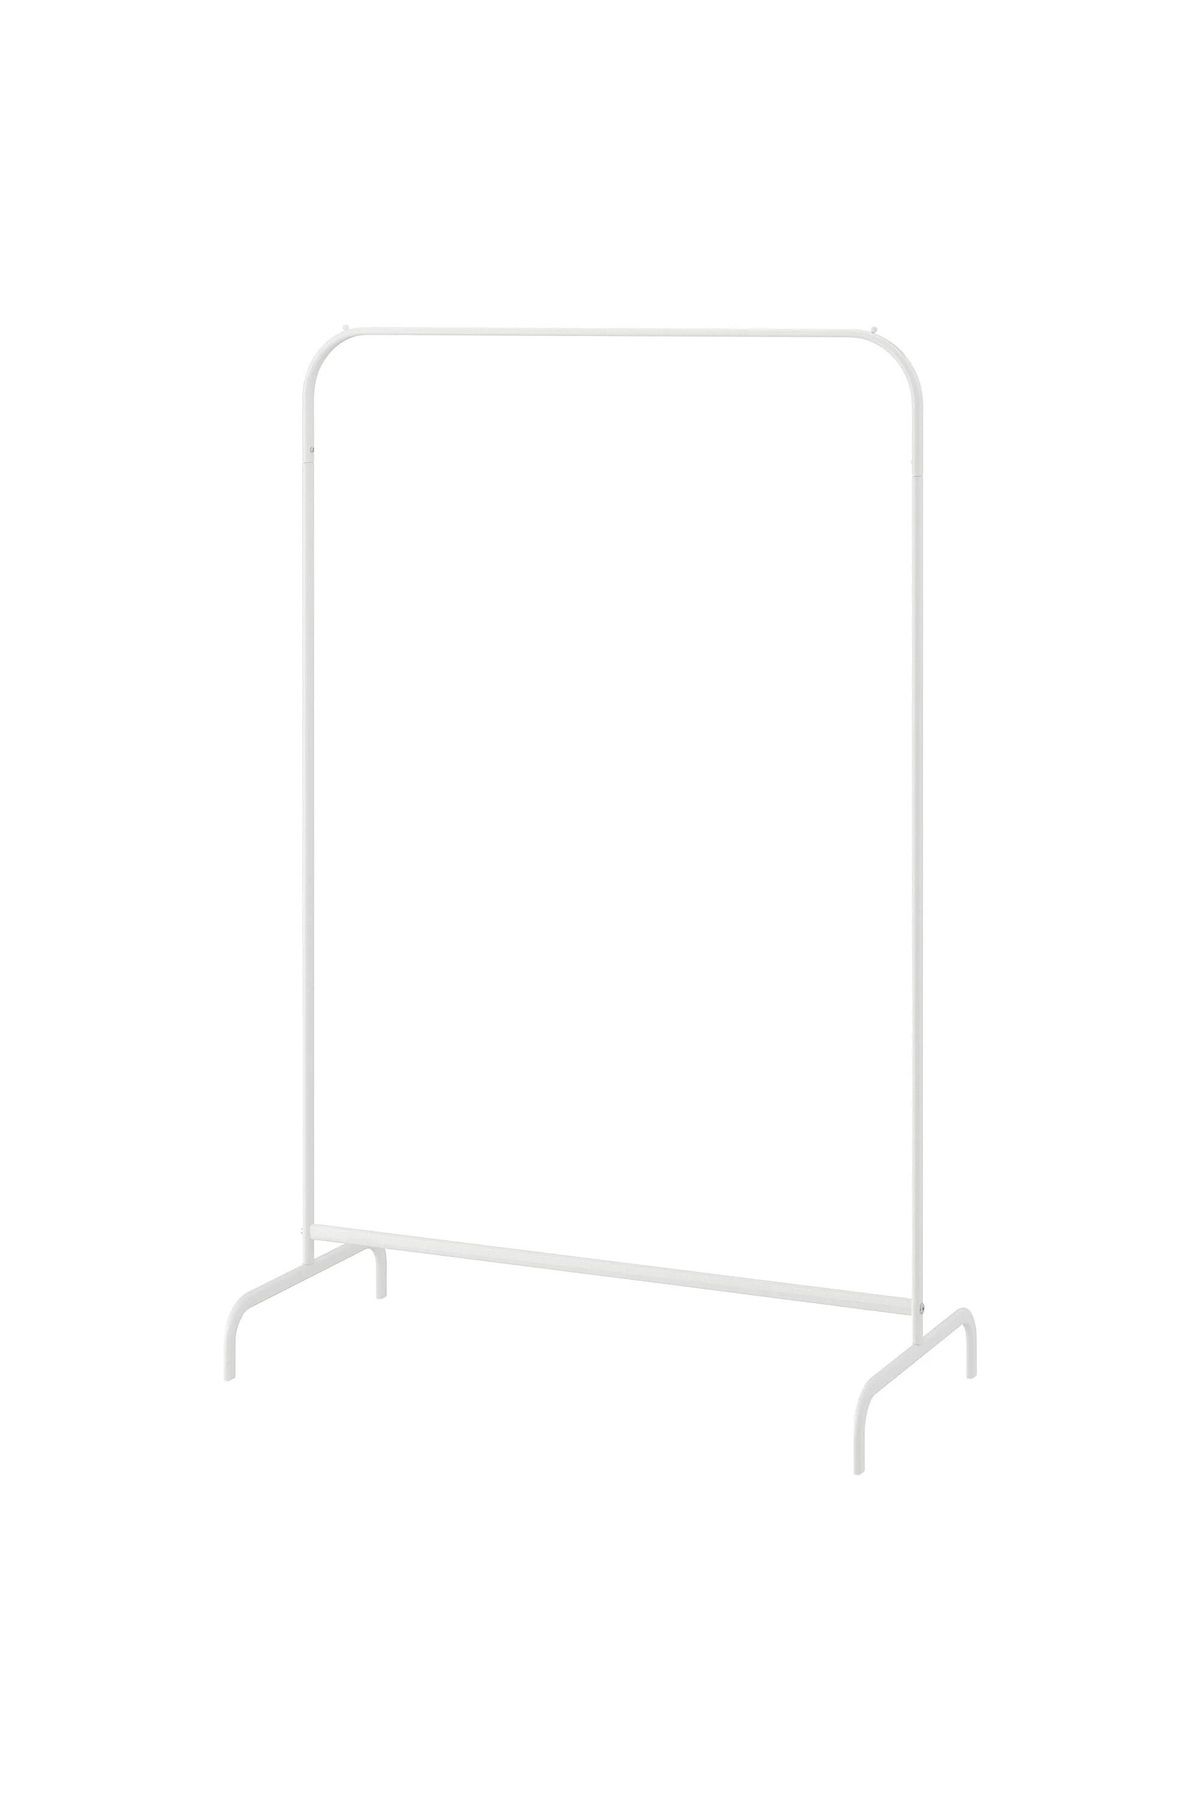 IKEA MULIG ayaklı askılık, beyaz, 99x151 cm